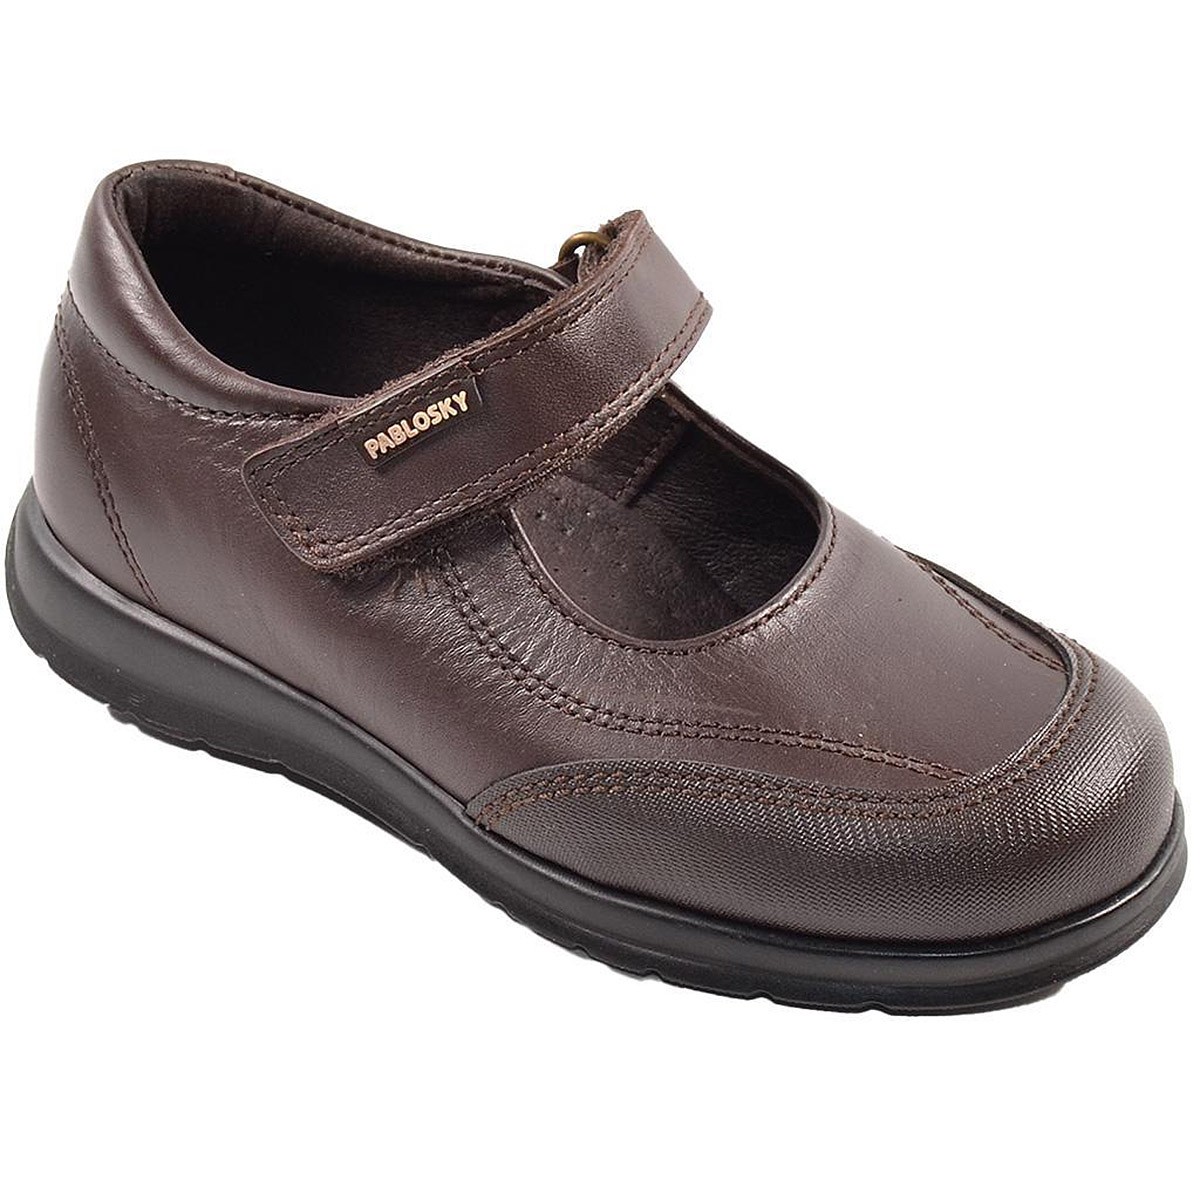 310190 Pablosky Zapato Colegial Zapato colegial de piel y puntera reforzada. Forro y plantilla textil inTech transpirable. Velcr